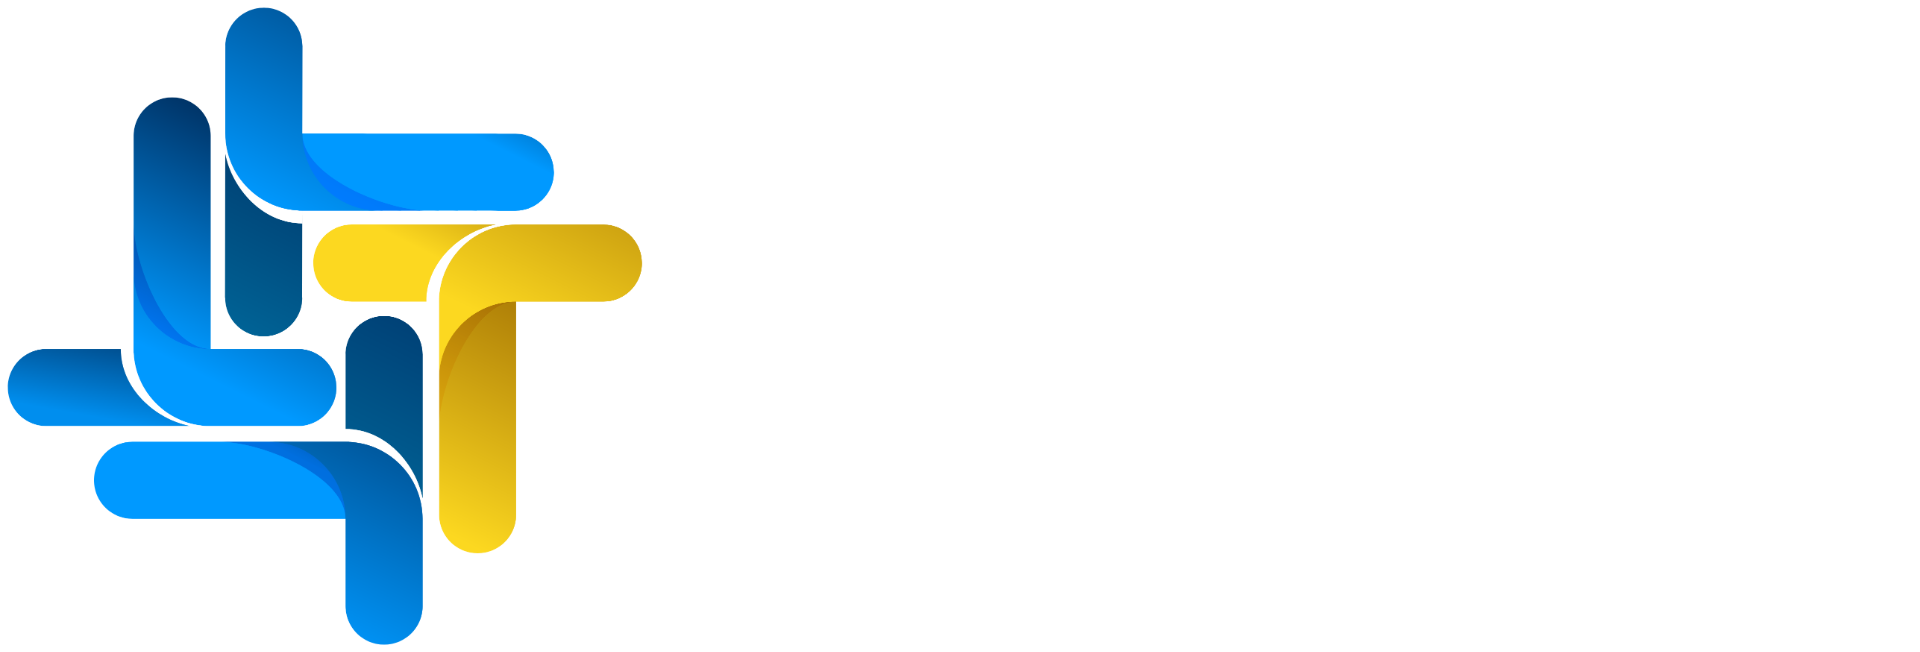 Logomarca Transferegov.br - horizontal HD [para fundo escuro].png